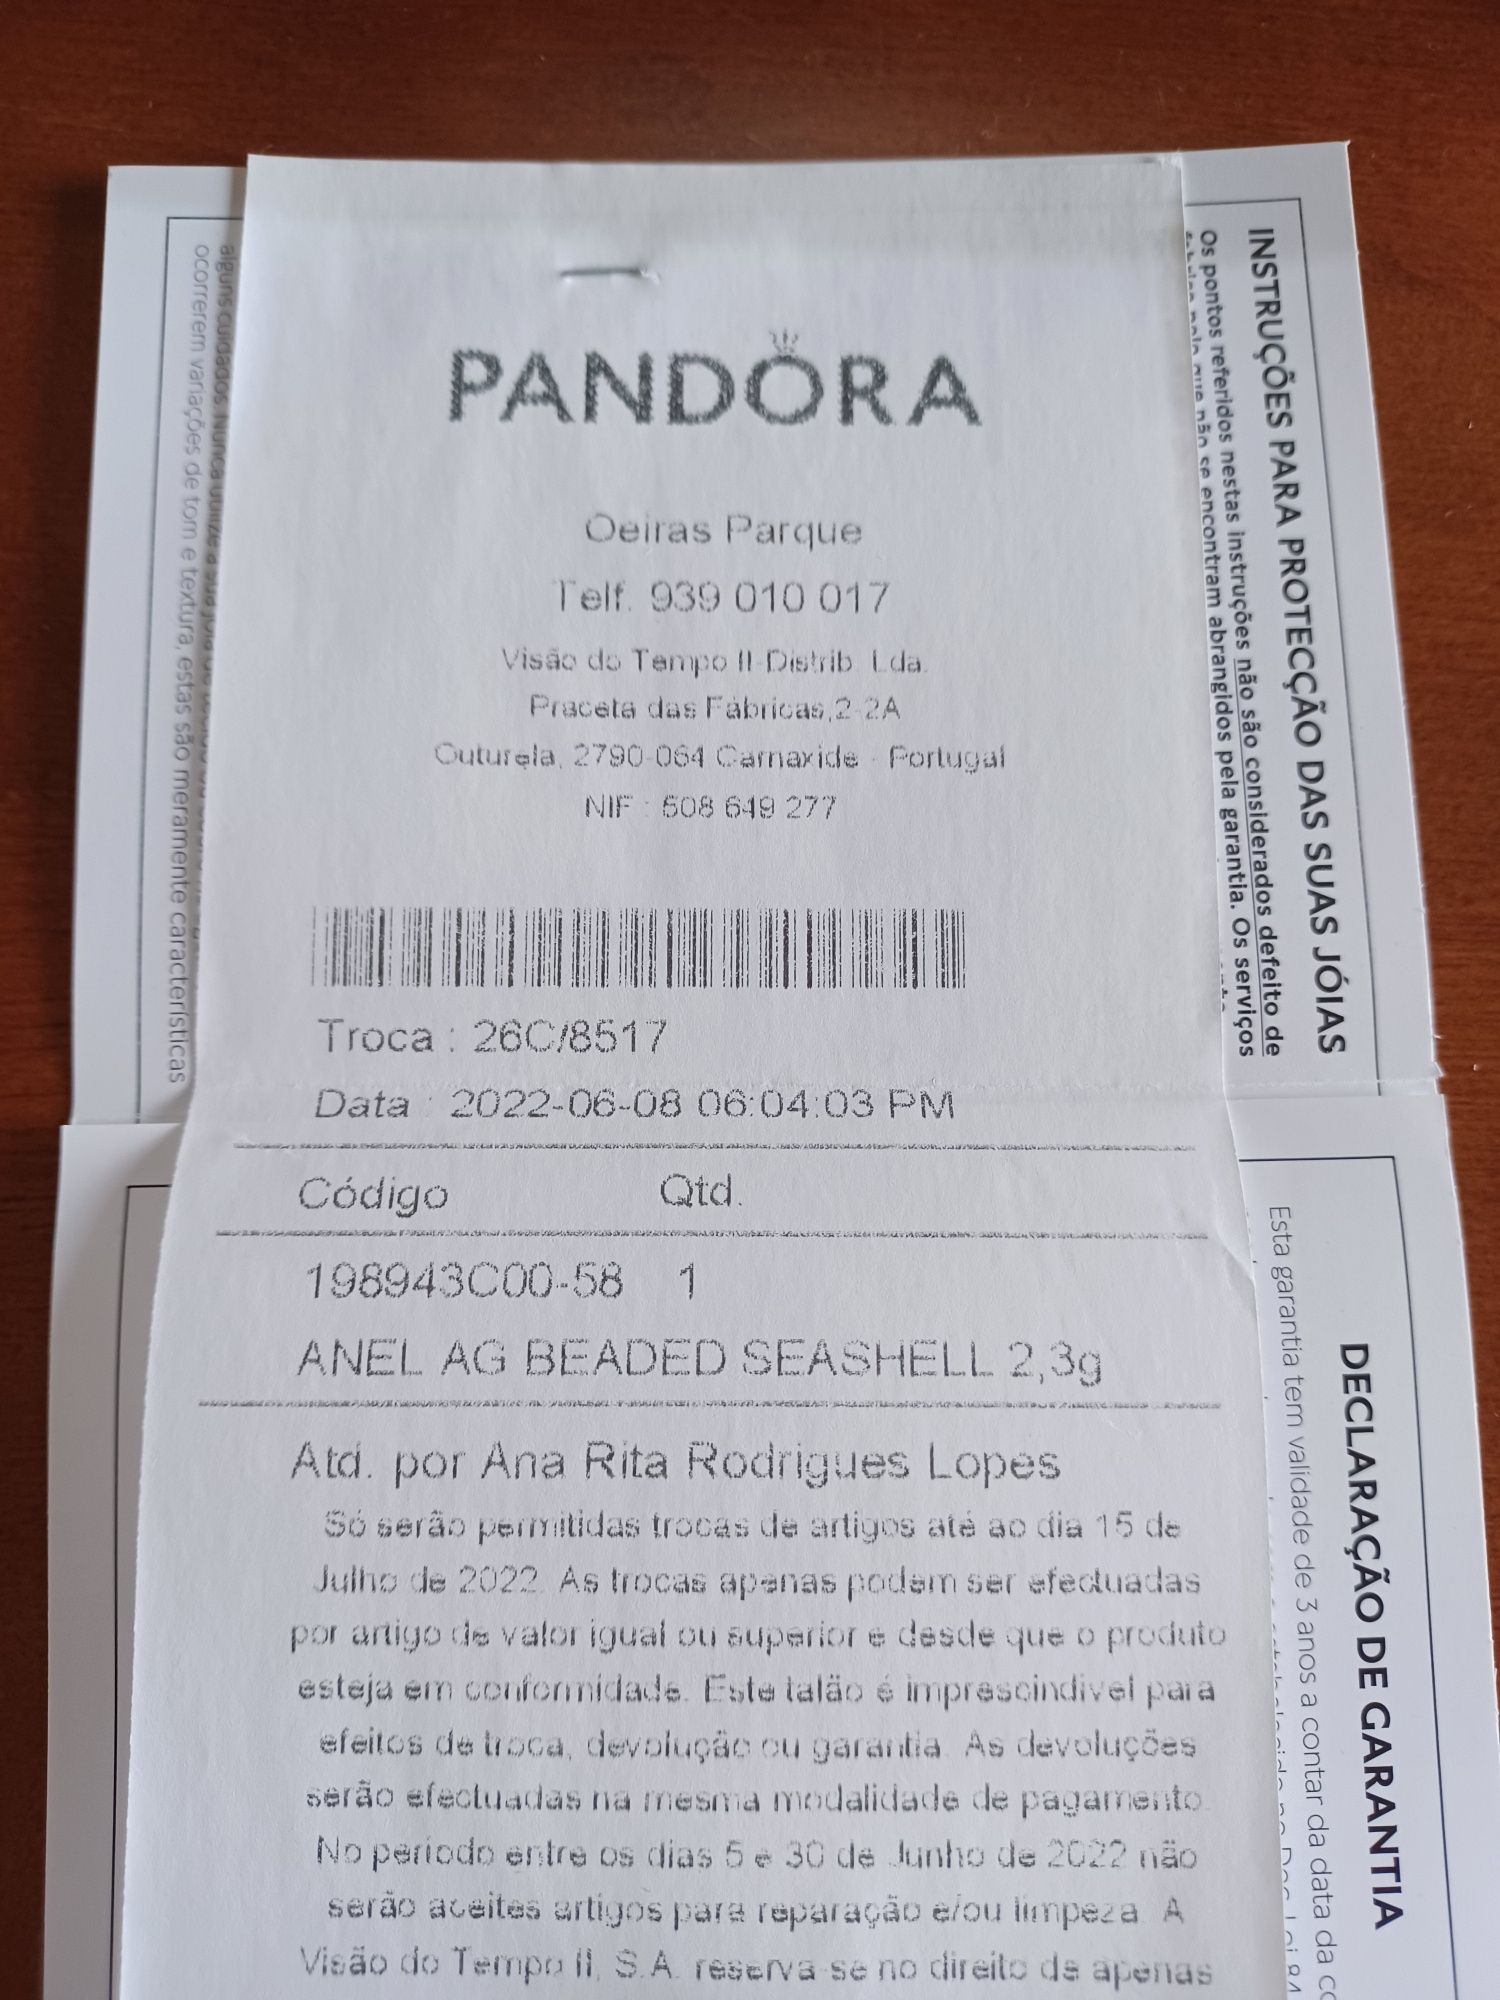 Anel Pandora Beaded Seashell - Tamanho 58 - novo com fatura
Prata 
Tam